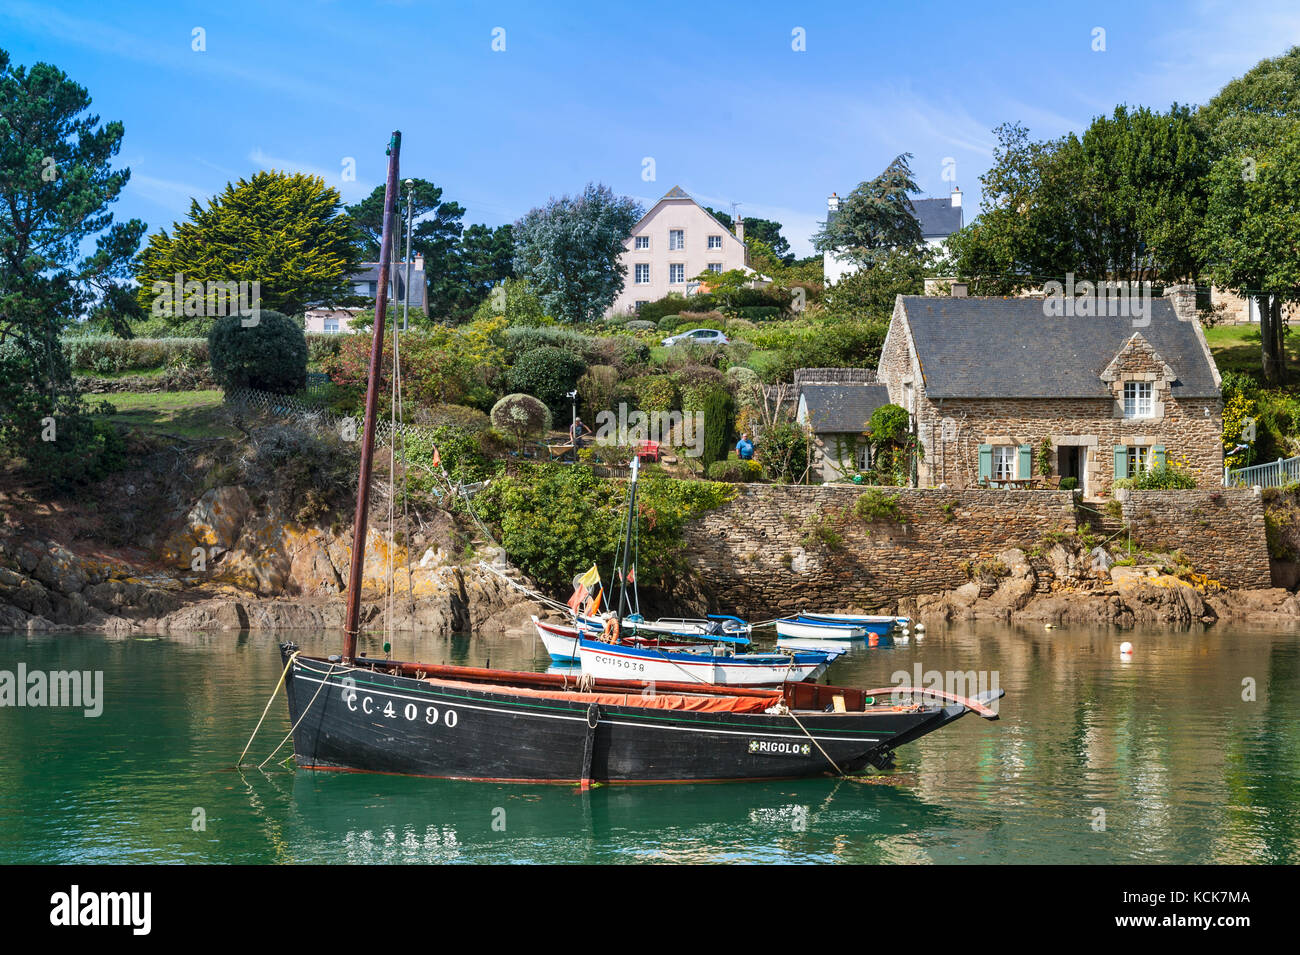 Bateau de pêche traditionnel de Bretagne VINTAGE Europe paysage avec bateau de pêche Breton historique à Döelan Finistere Bretagne Banque D'Images